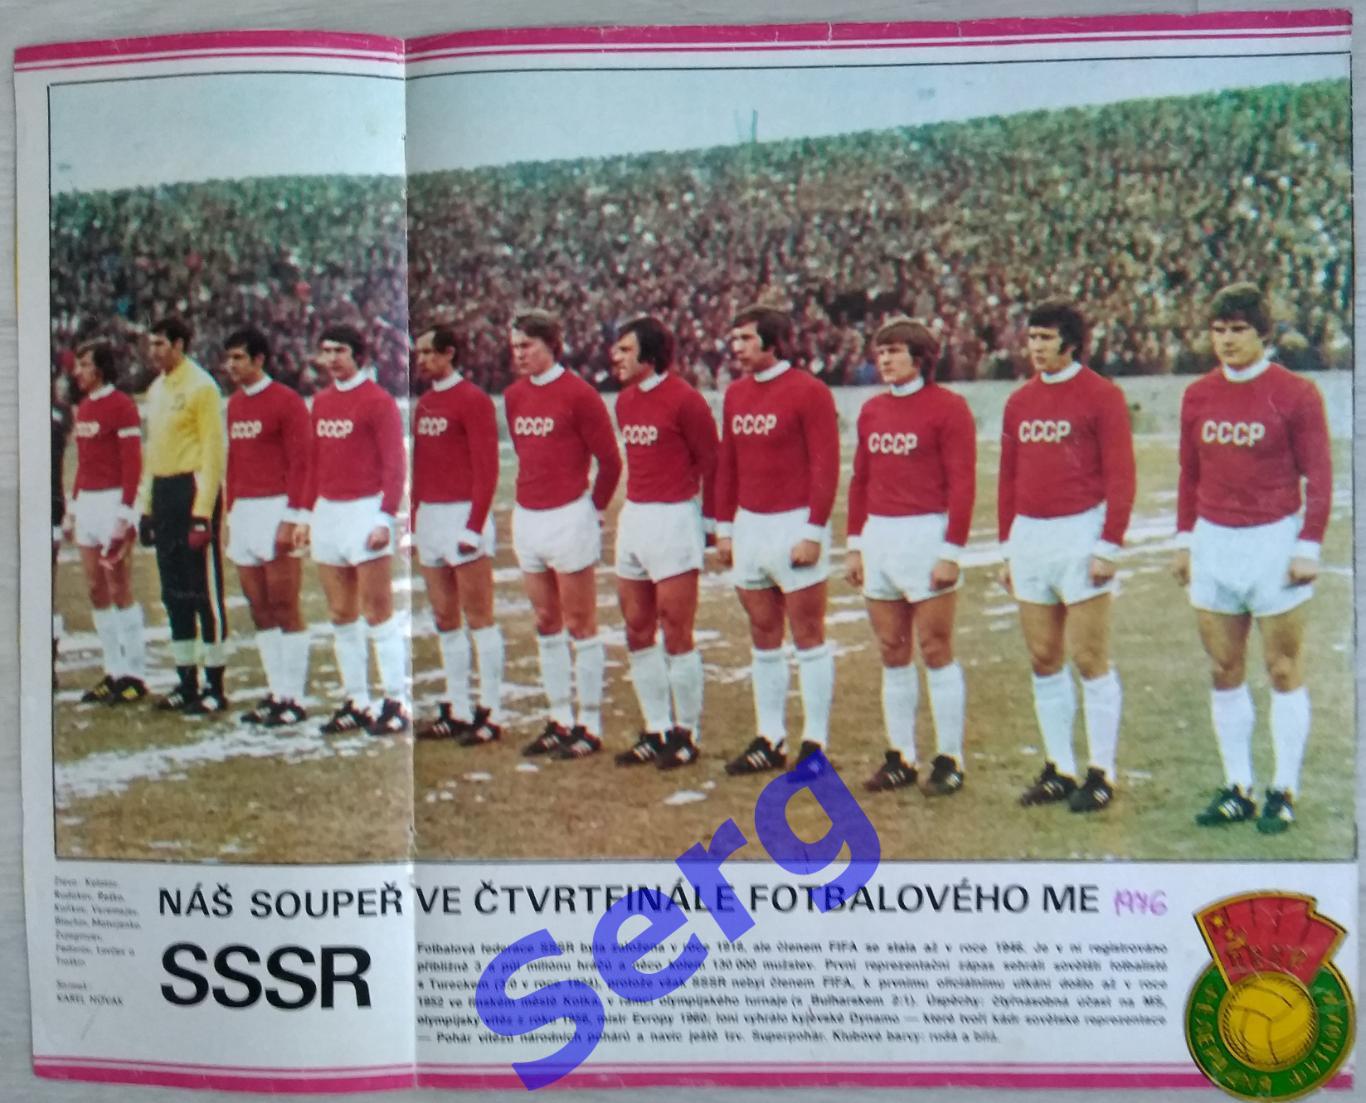 Постер СССР из журнала Стадион (Stadion)